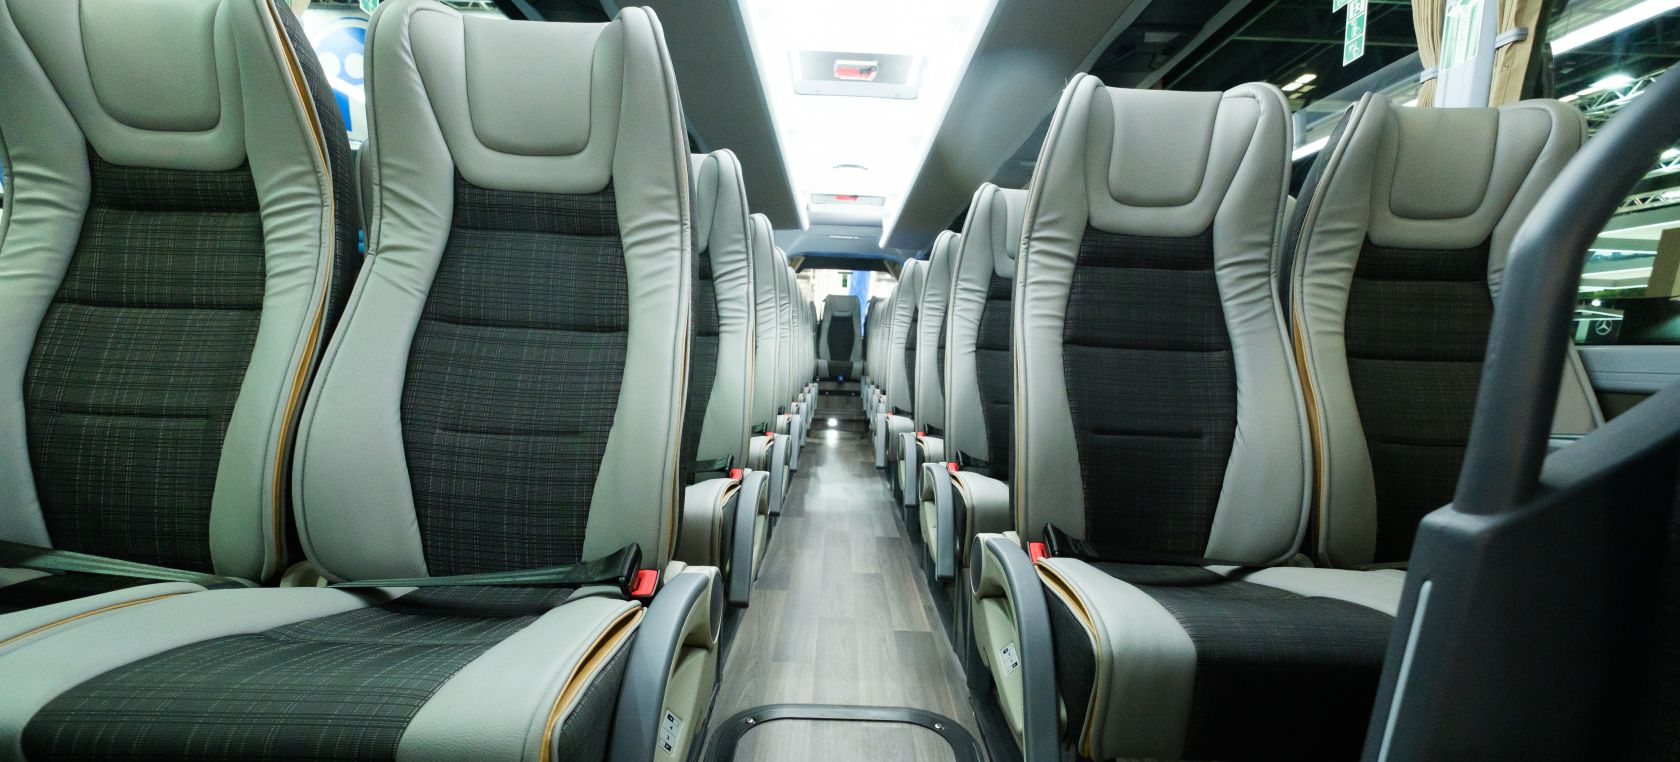 Los viajes de largo recorrido en autobús serán gratis en España en 2023